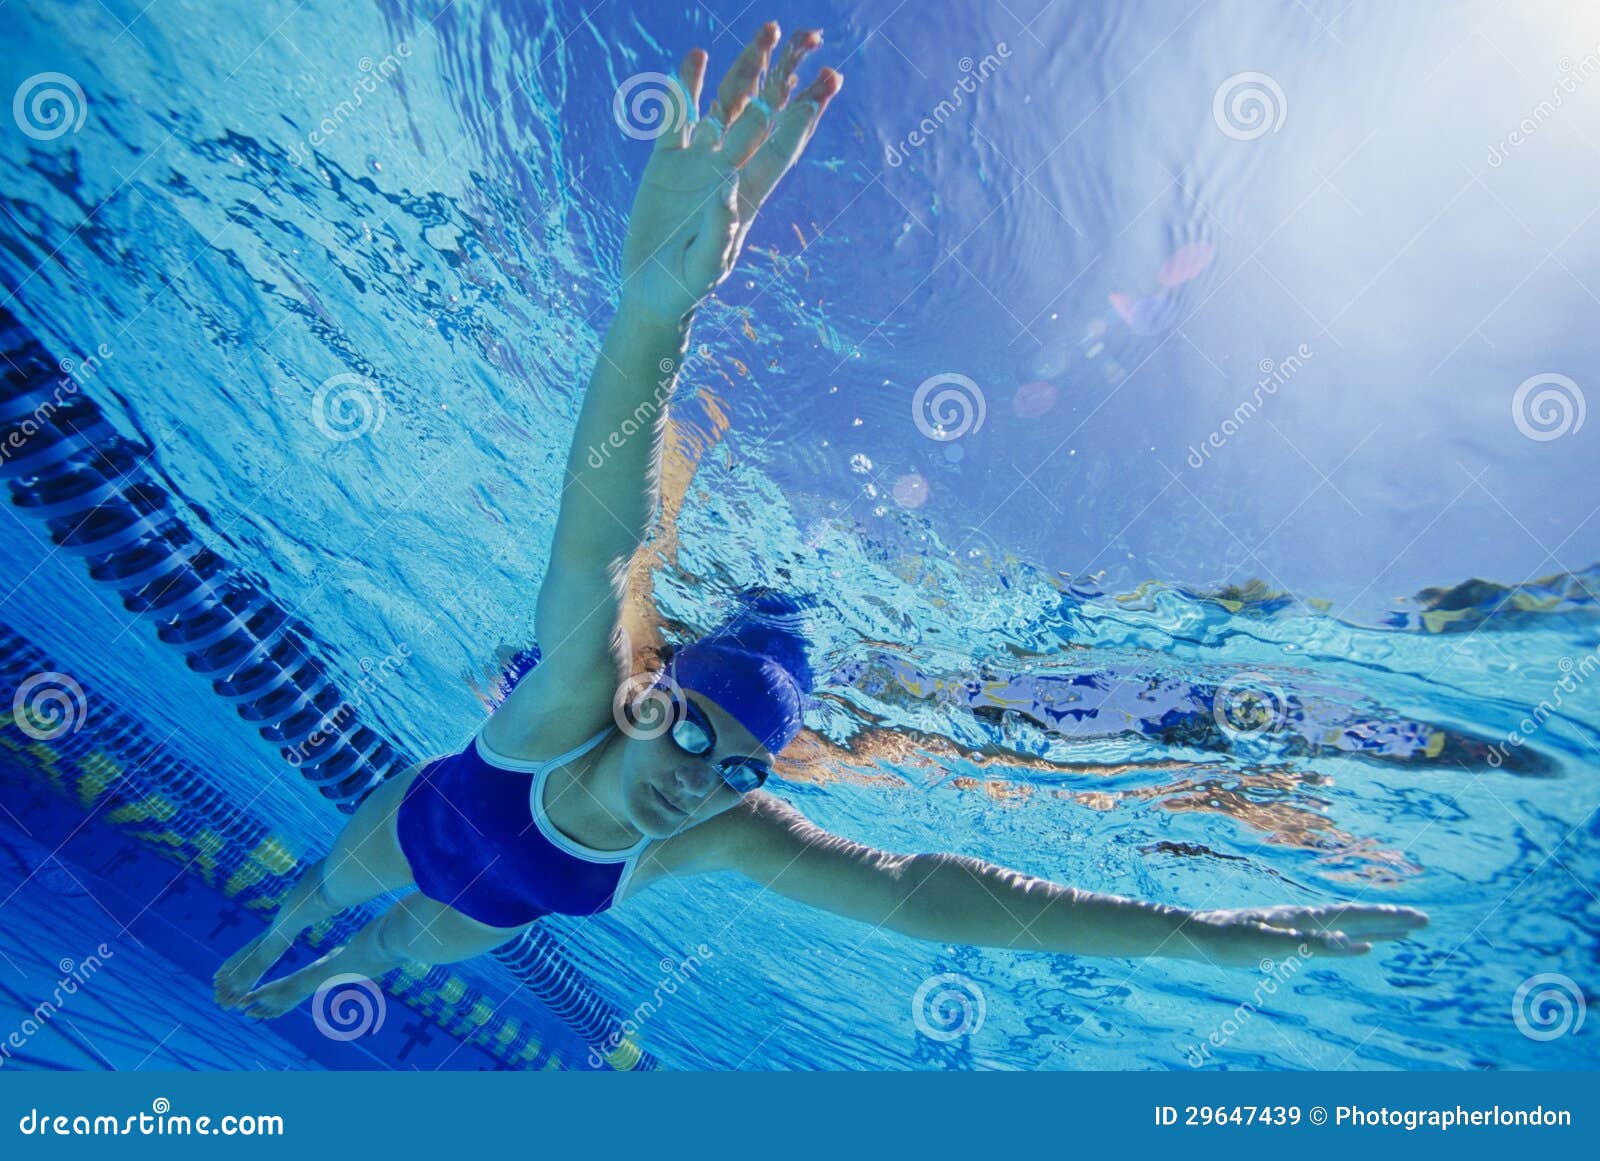 female participant swimming underwater